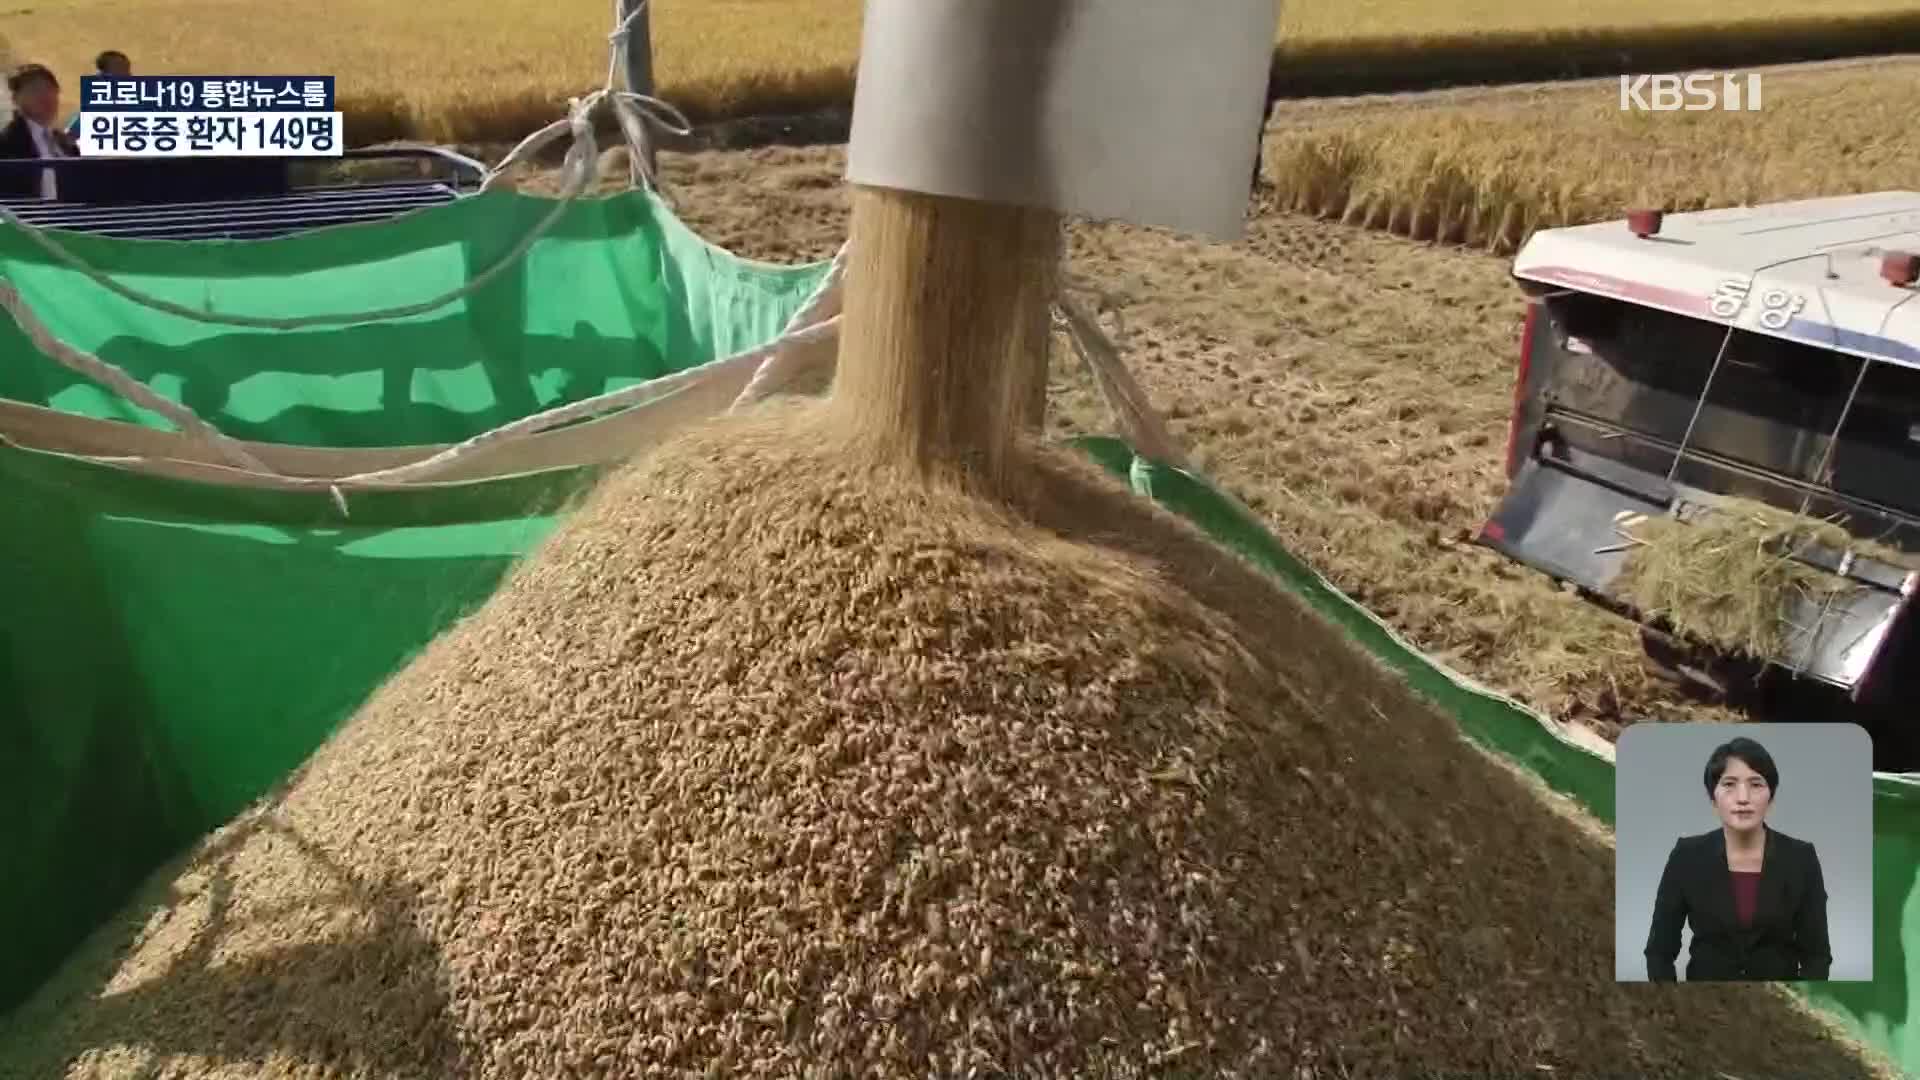 쌀값 1년 전보다 20%↑…벼 재배면적도 20년 만에 증가 전망